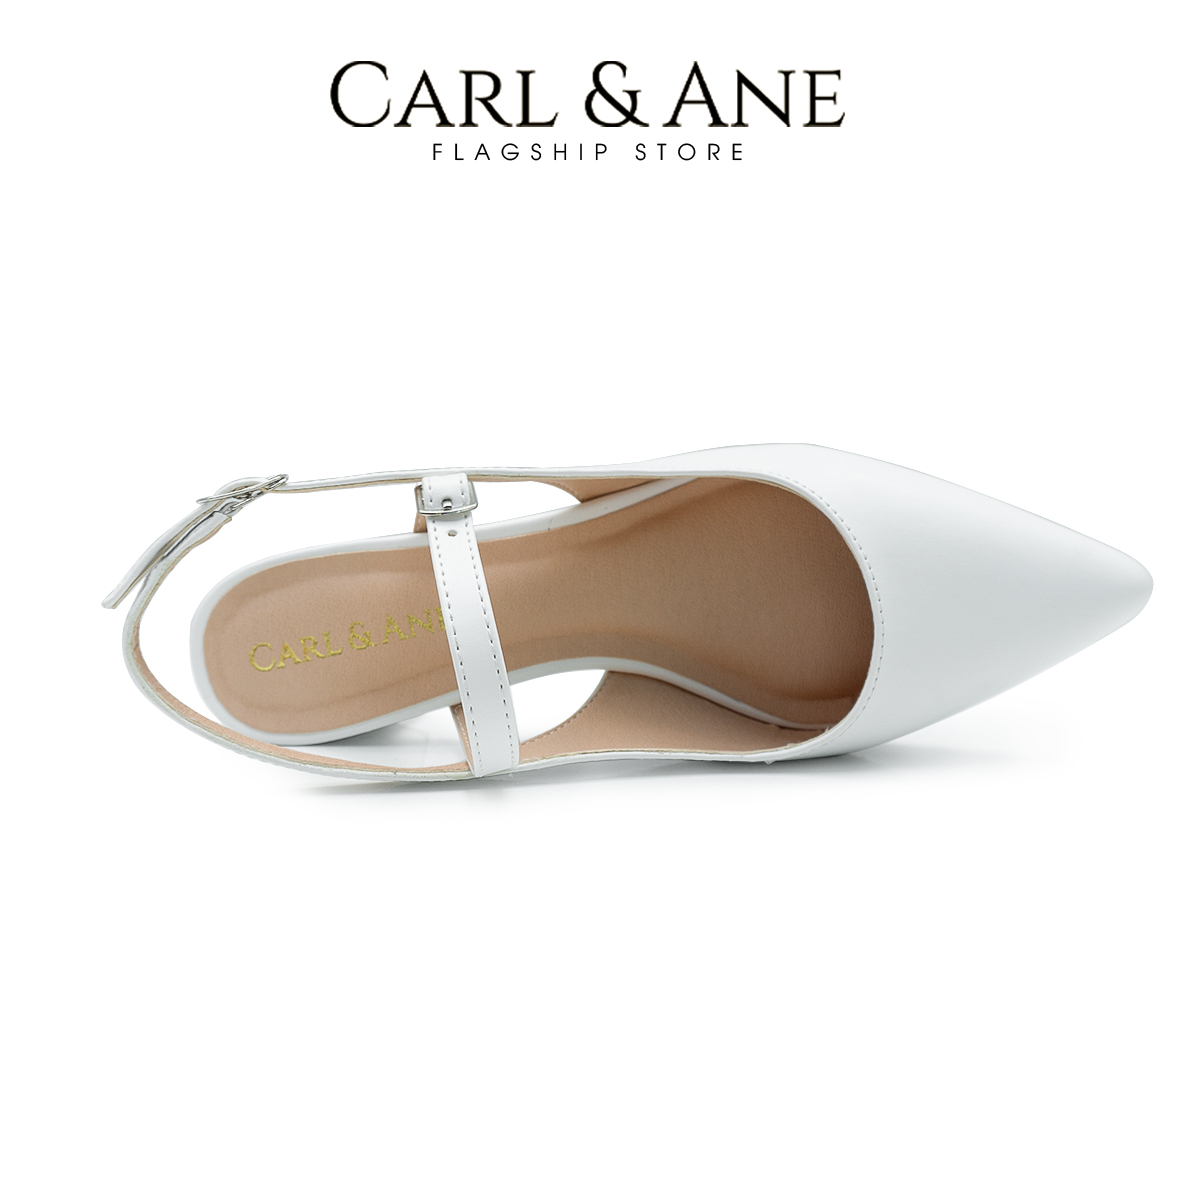 Carl & Ane - Giày cao gót mũi nhọn kiểu dáng thanh lịch cao 3,5cm màu nude - CL023